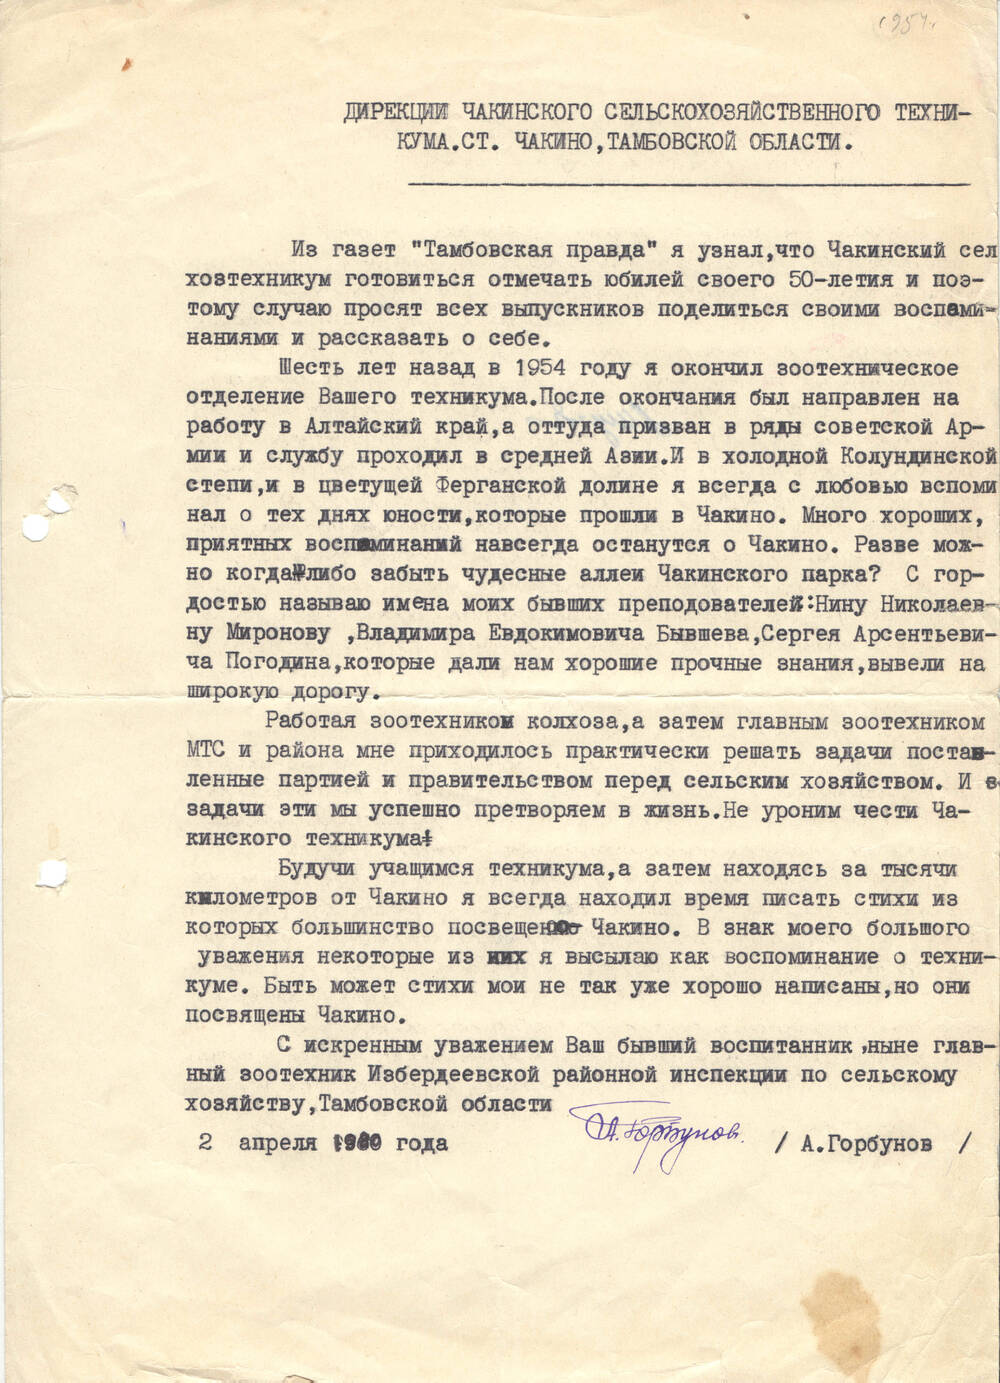 Письмо от А.Горбунова от 02.04.1960 г.